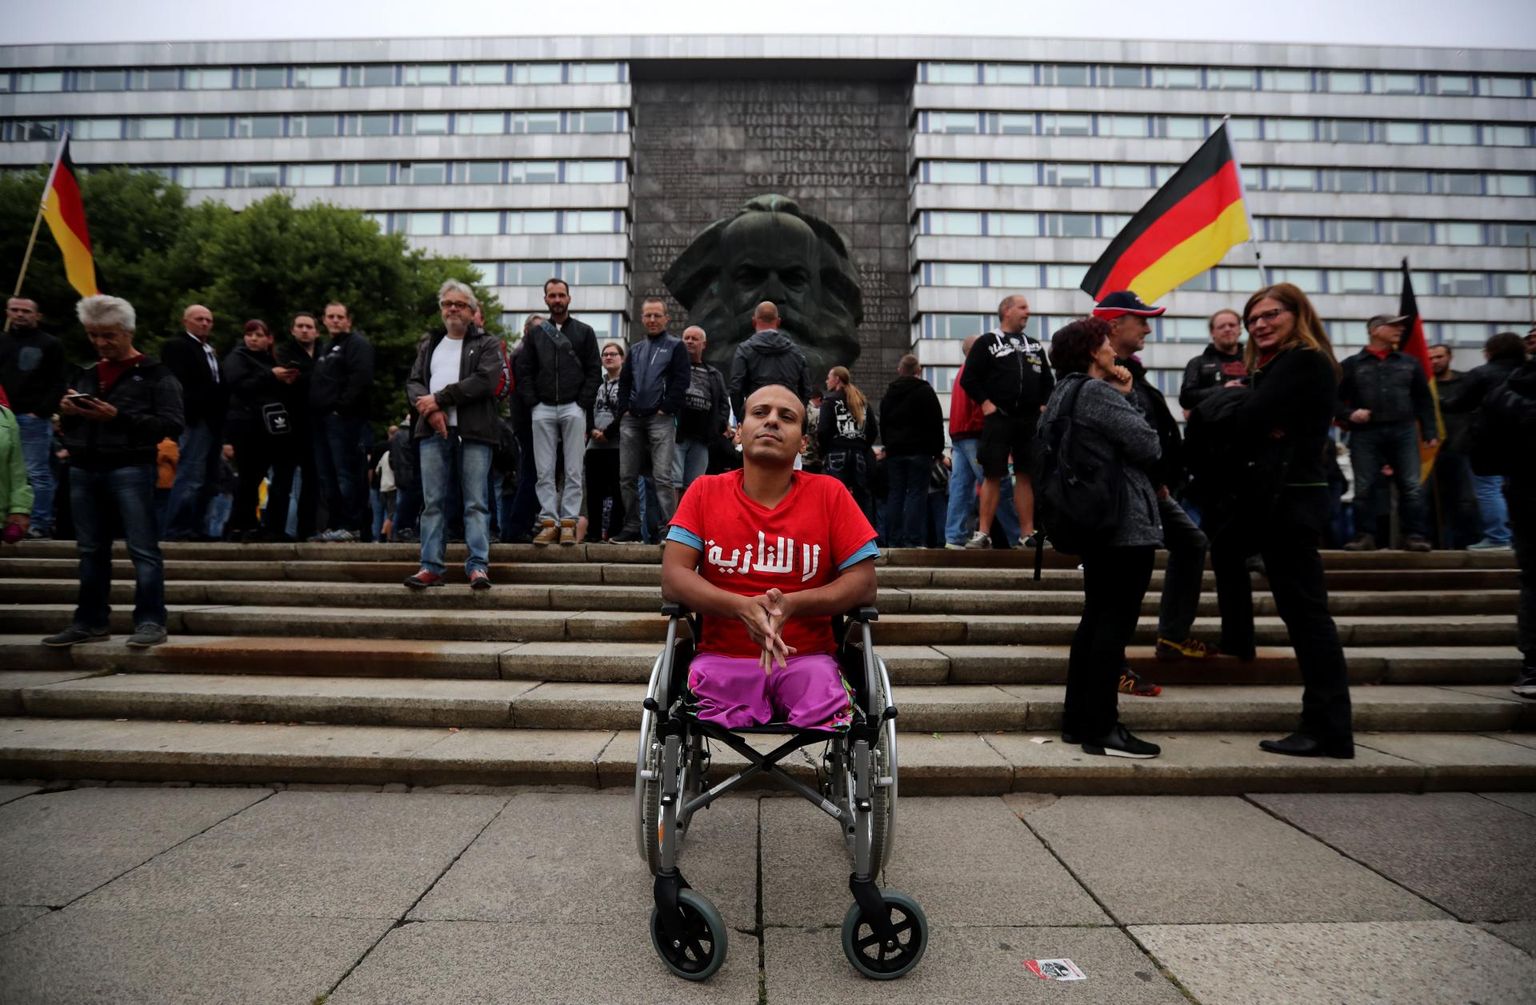 Pärast seda, kui mullu augusti lõpus tapeti väidetavalt välismaalaste poolt sakslane Daniel Hillig, puhkesid Chemnitzis ulatuslikud paremäärmuslaste meeleavaldused, mille peakorraldajaks oli rühmitus Pro Chemnitz. Ratastoolis äärmuslaste keskele tulnud iraaklane Mustafa kandis särki kirjaga «Ei natsidele», avaldades nõnda vastumeelsust välismaalaste vastu suunatud vihale.